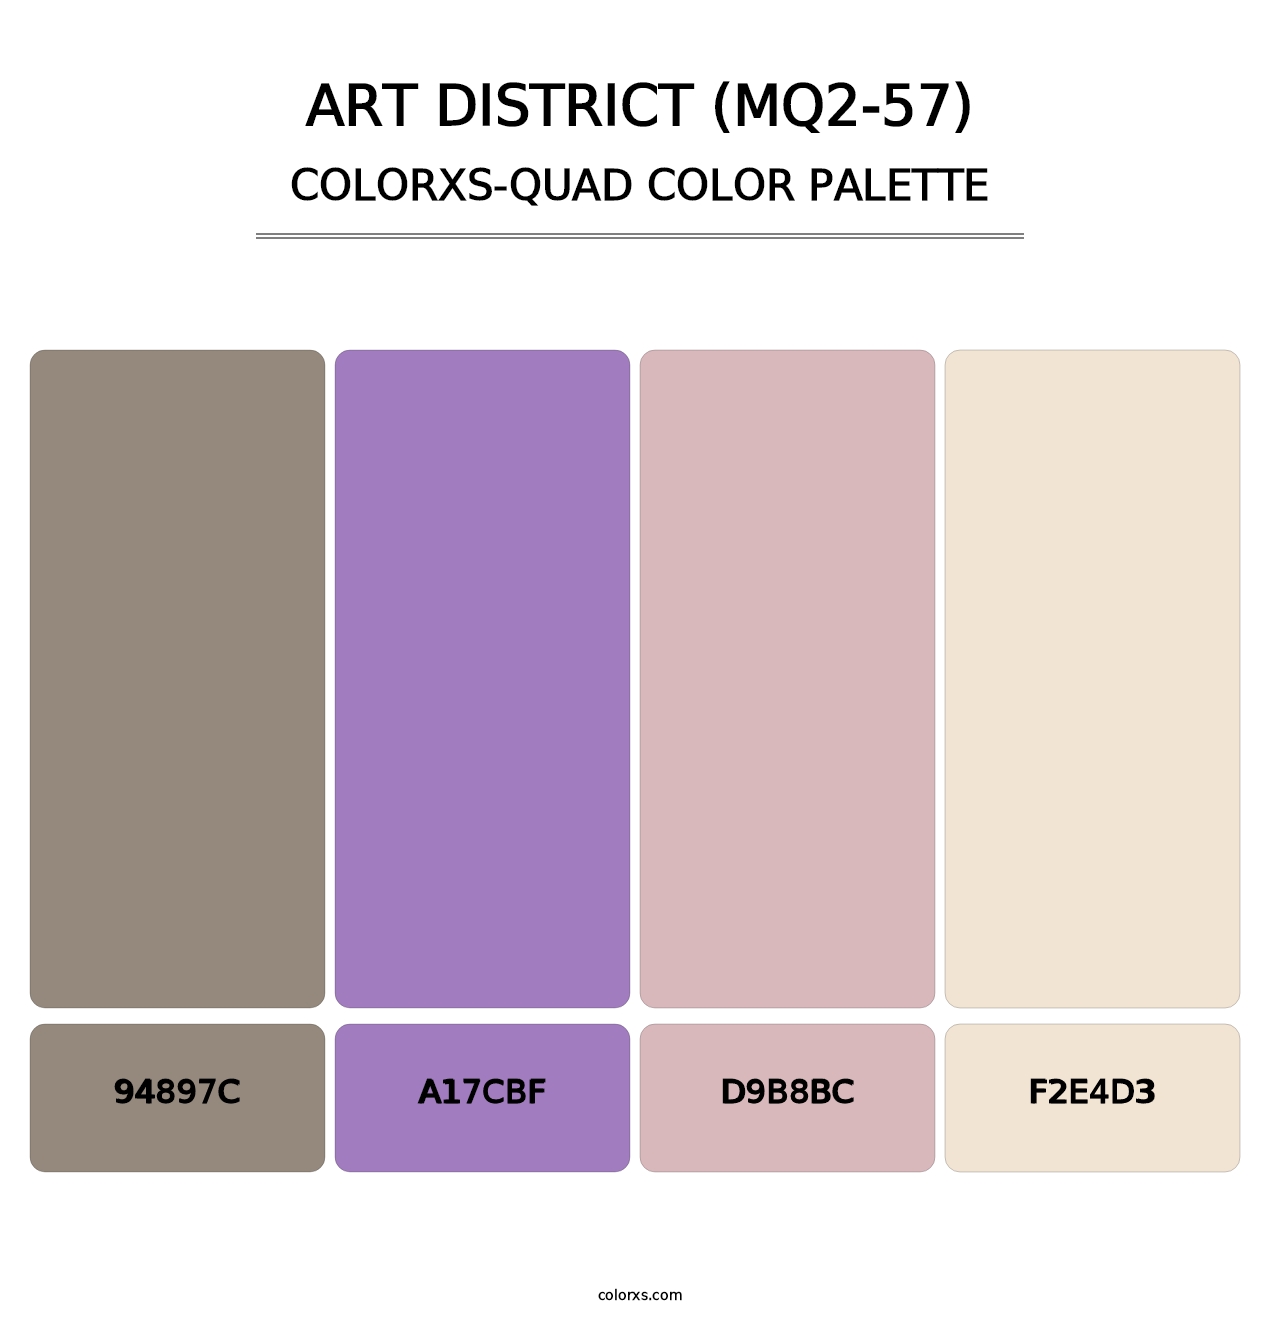 Art District (MQ2-57) - Colorxs Quad Palette